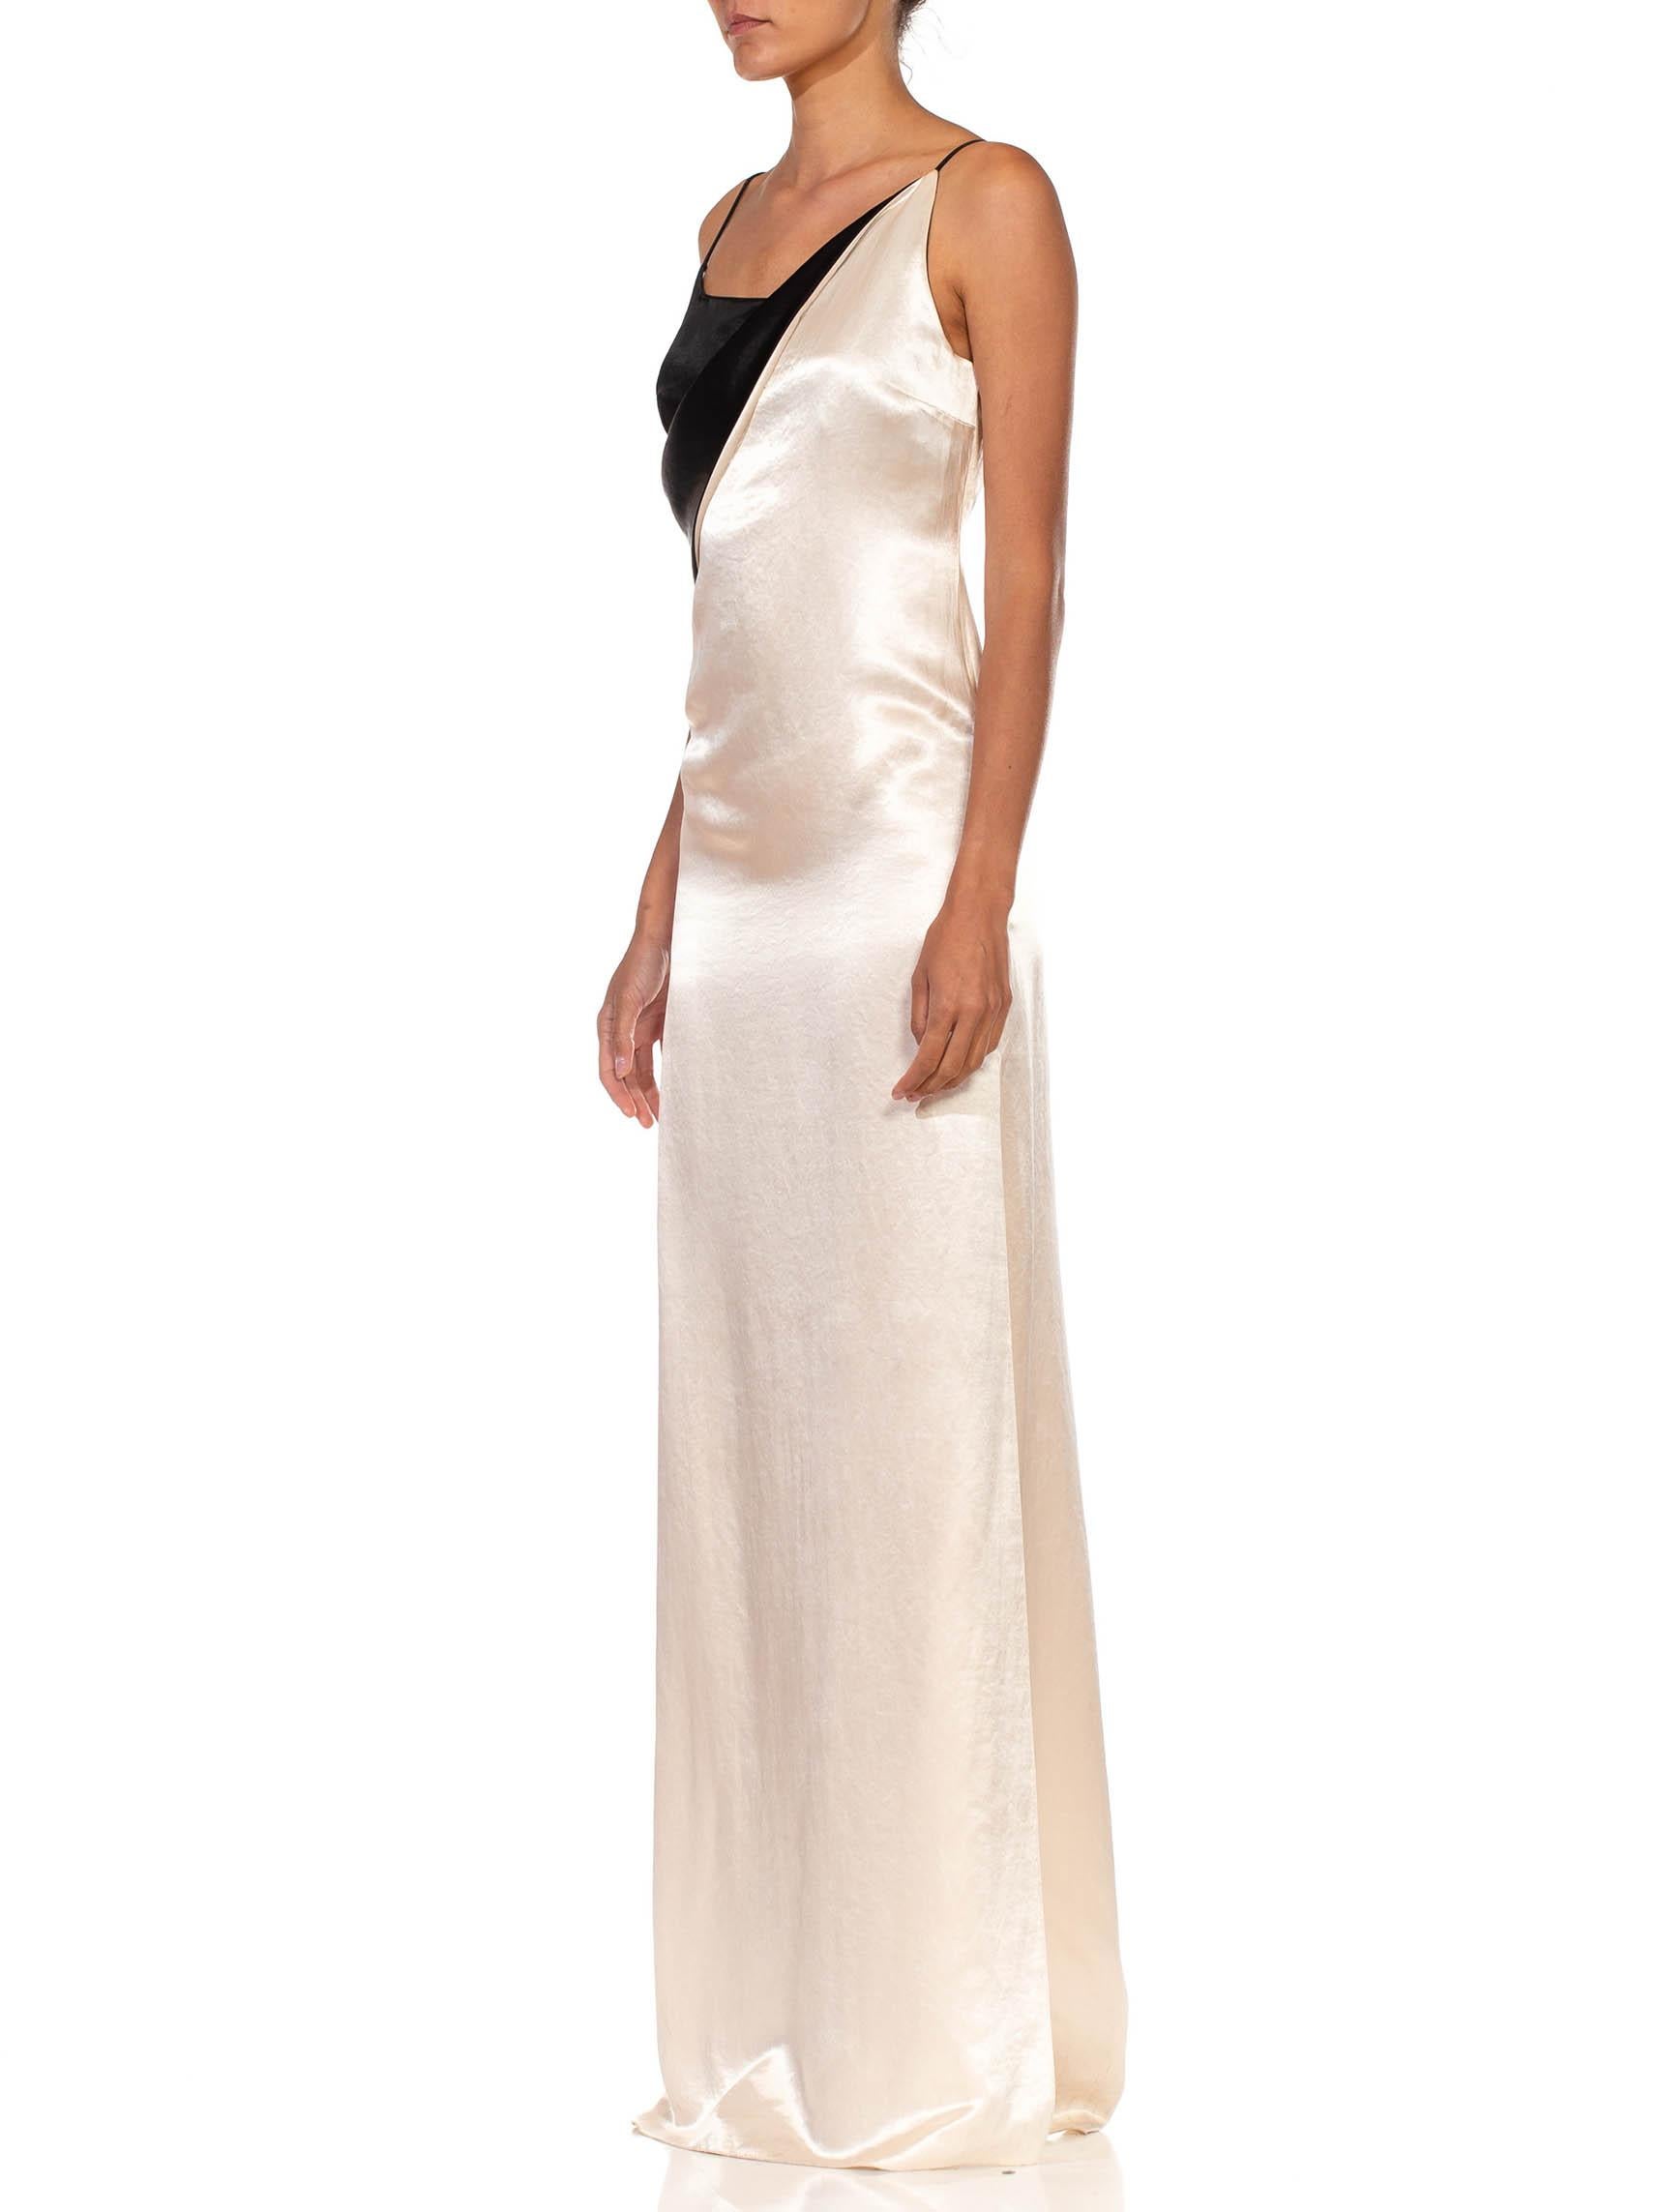 Women's 2000S ALBER ELBAZ LANVIN Black & White Silk Blend Crepe Back Satin Draped Gown  For Sale